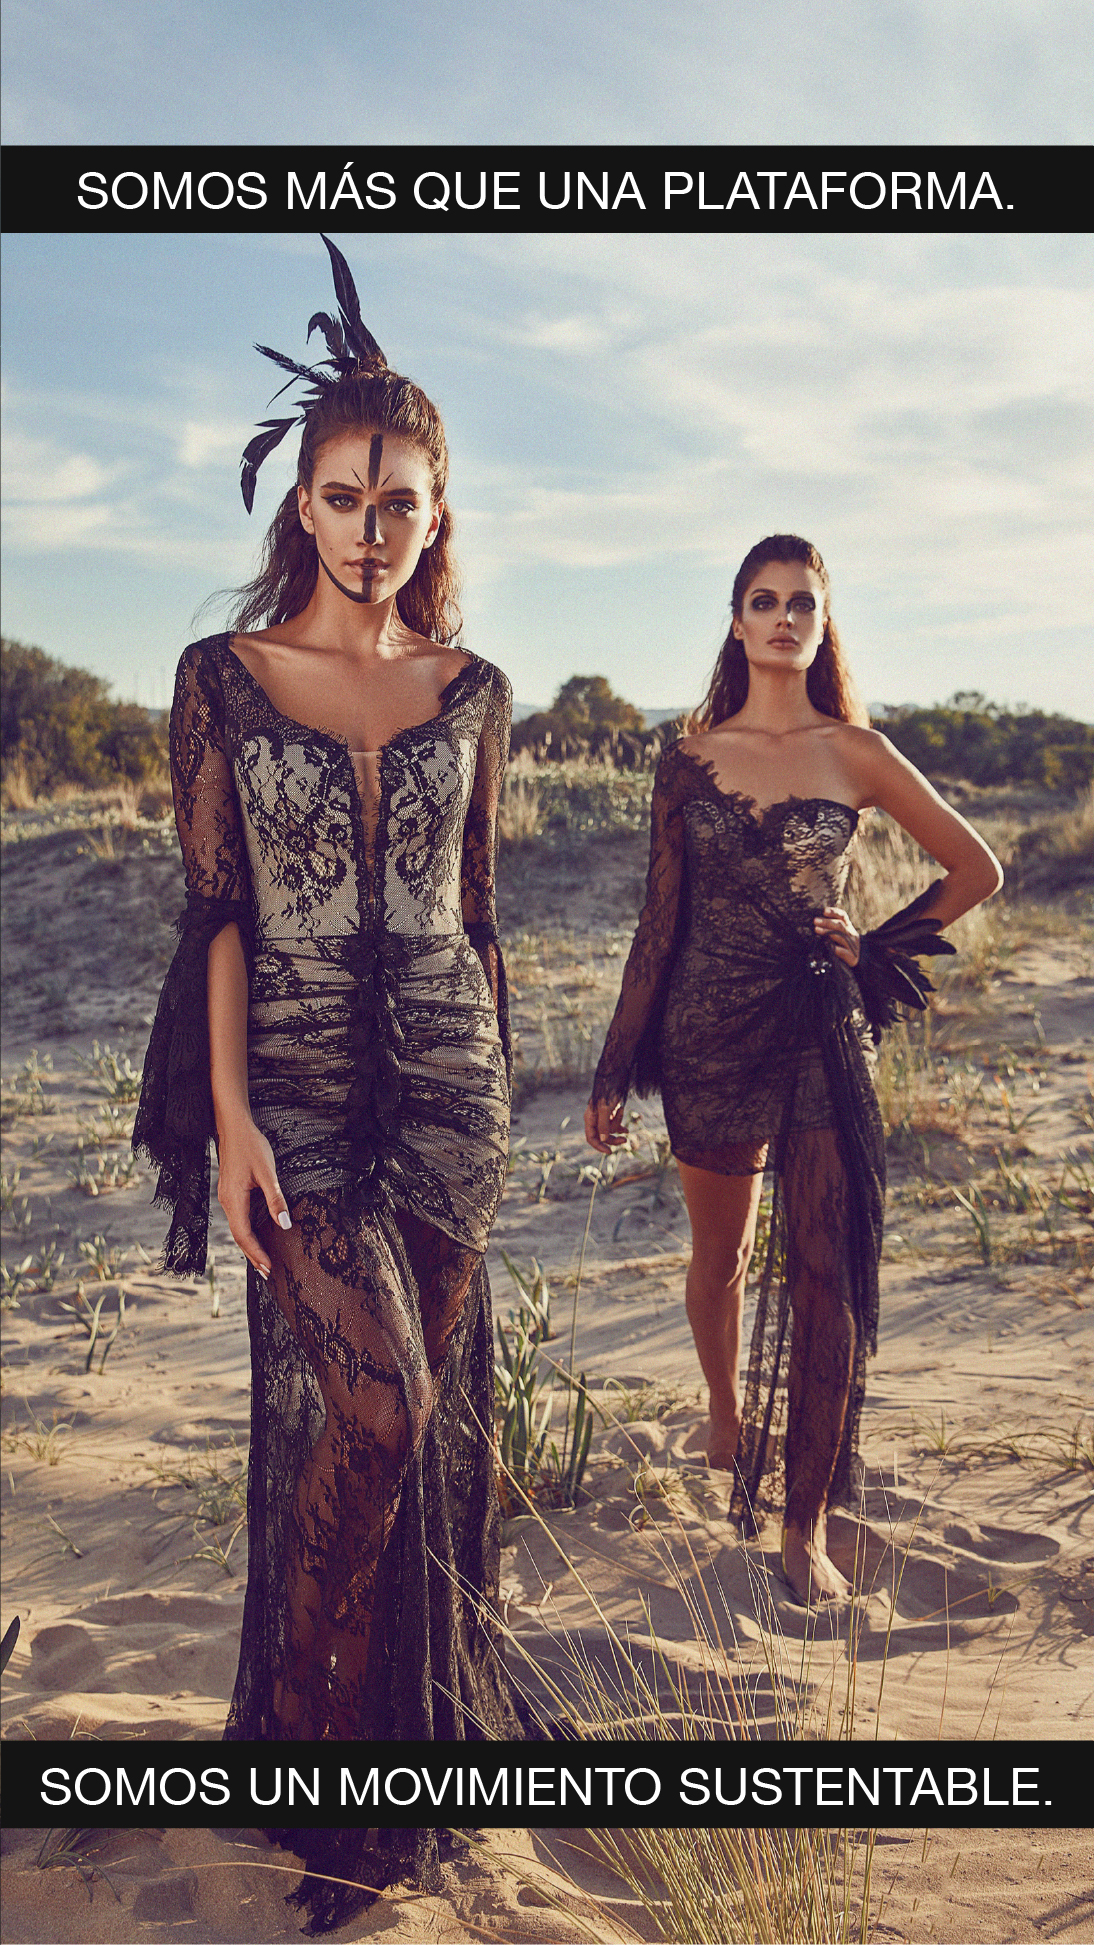 Dos mujeres en el desierto posando vestidos de moda sustentables.